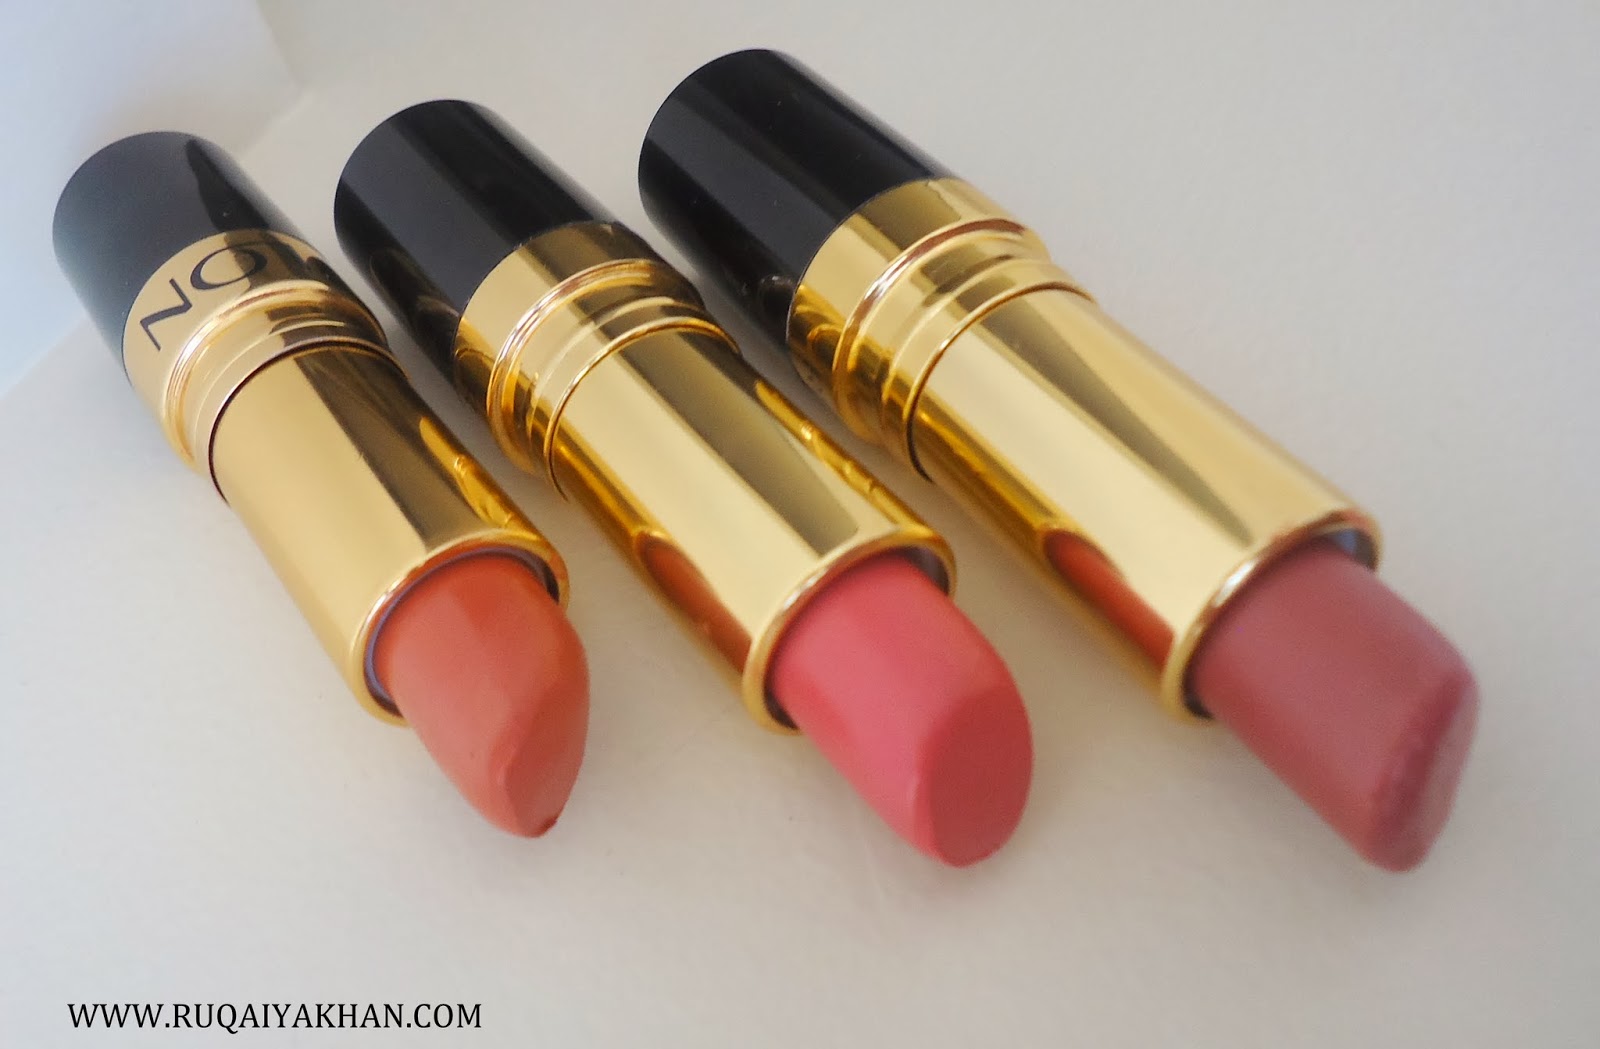 Ruqaiya Khan: Revlon Super Lustrous Lipsticks in Pink in the